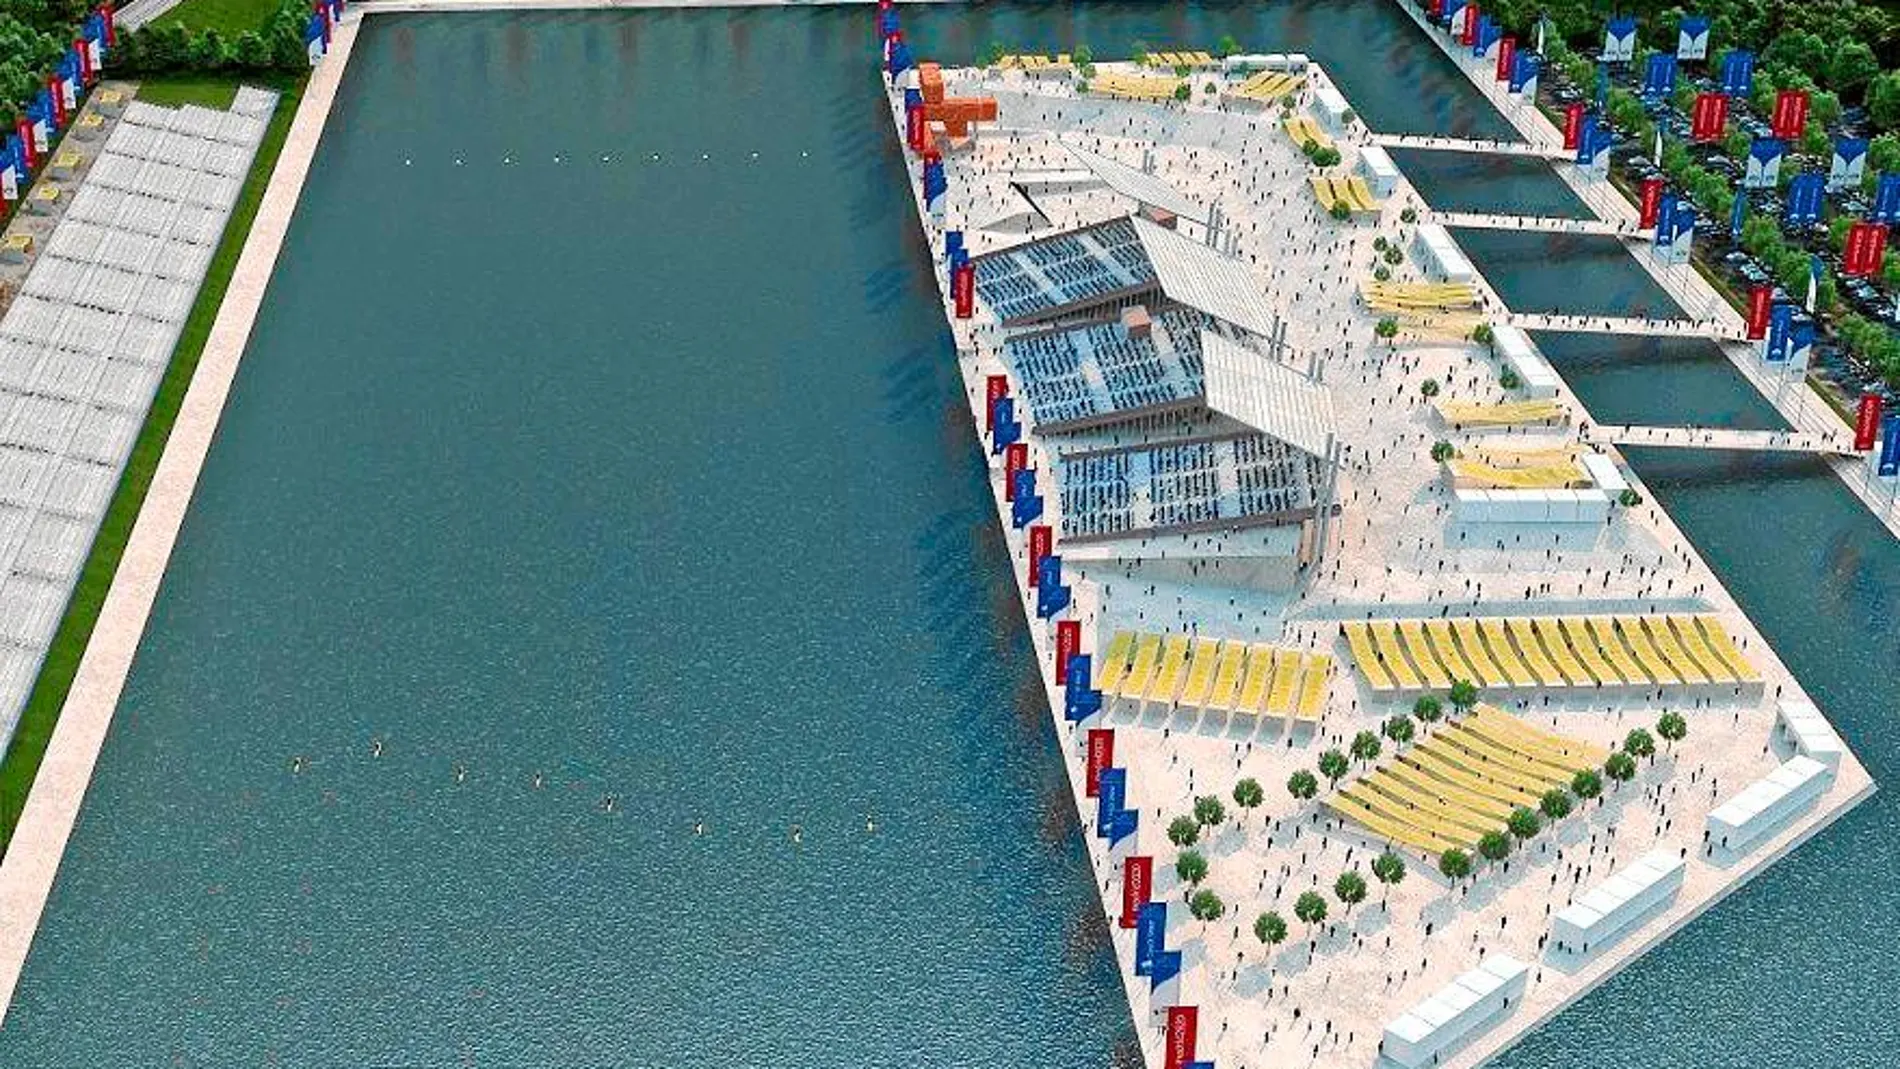 Recreación del proyecto del canal de regatas olímpico proyectado para Madrid 2020 y que transcurría entre el barrio de Villaverde y Getafe